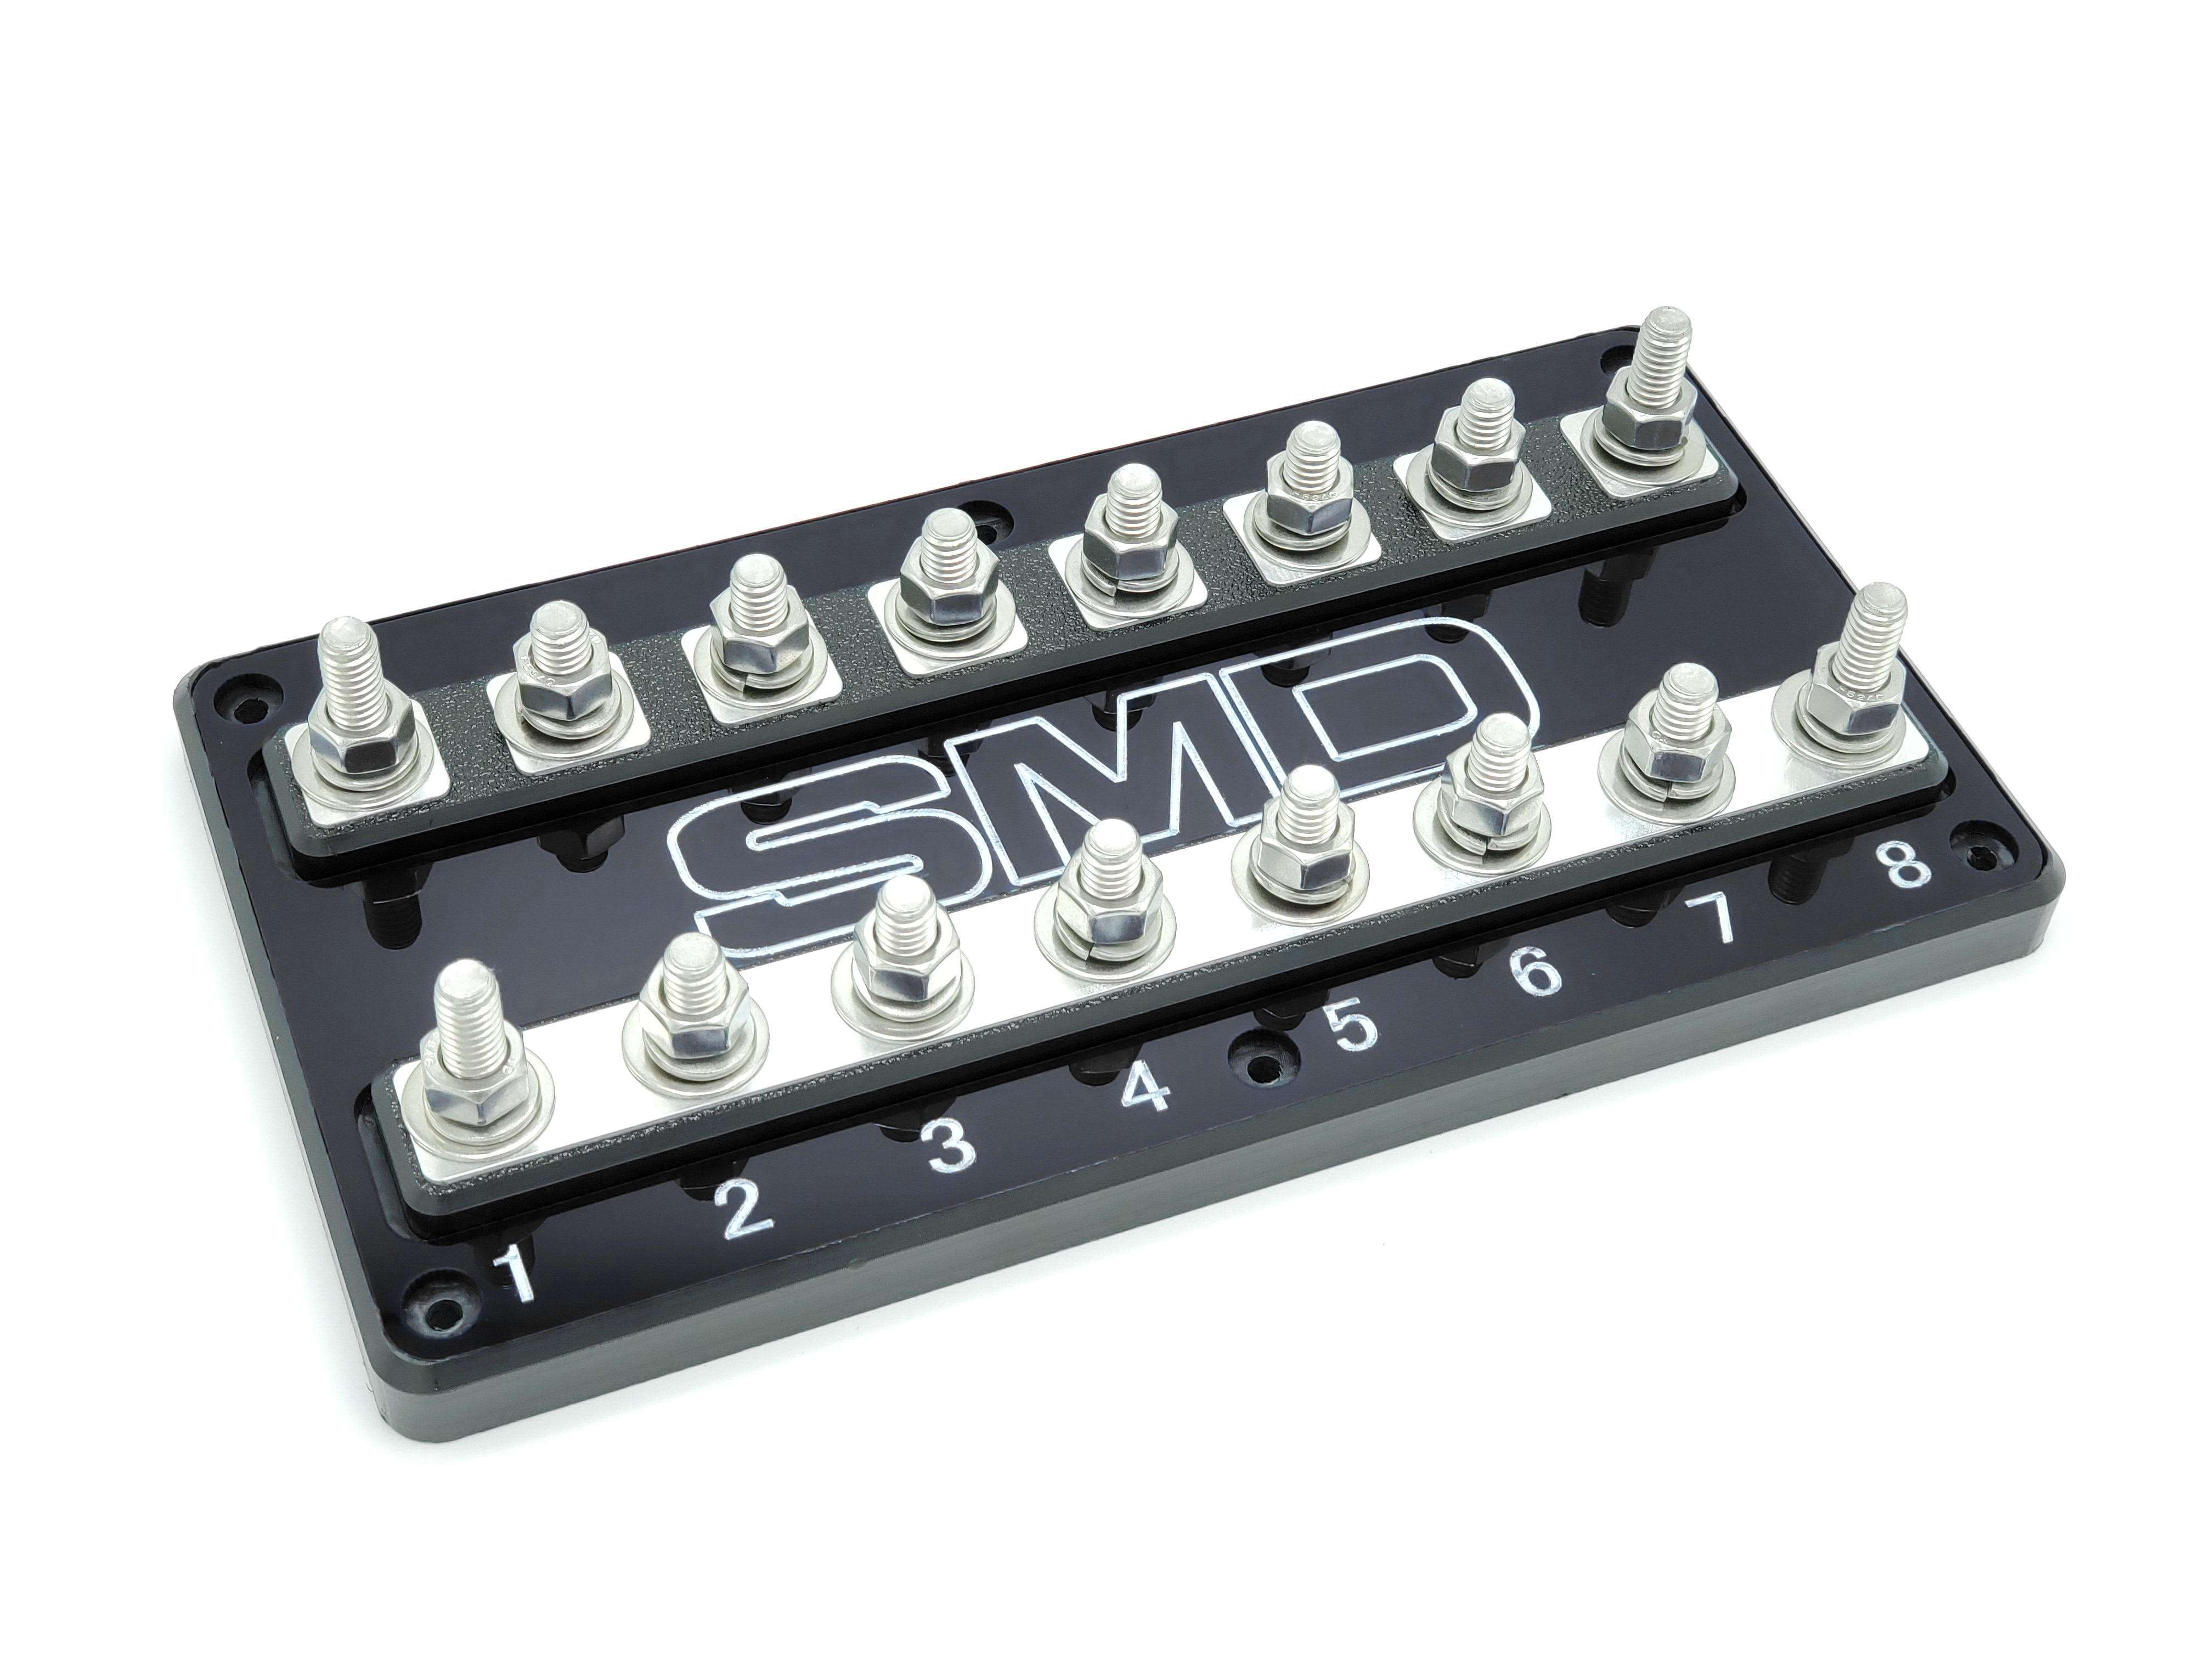 SMD Octo 8-Spot ANL Fuse Block - Steve Meade Designs